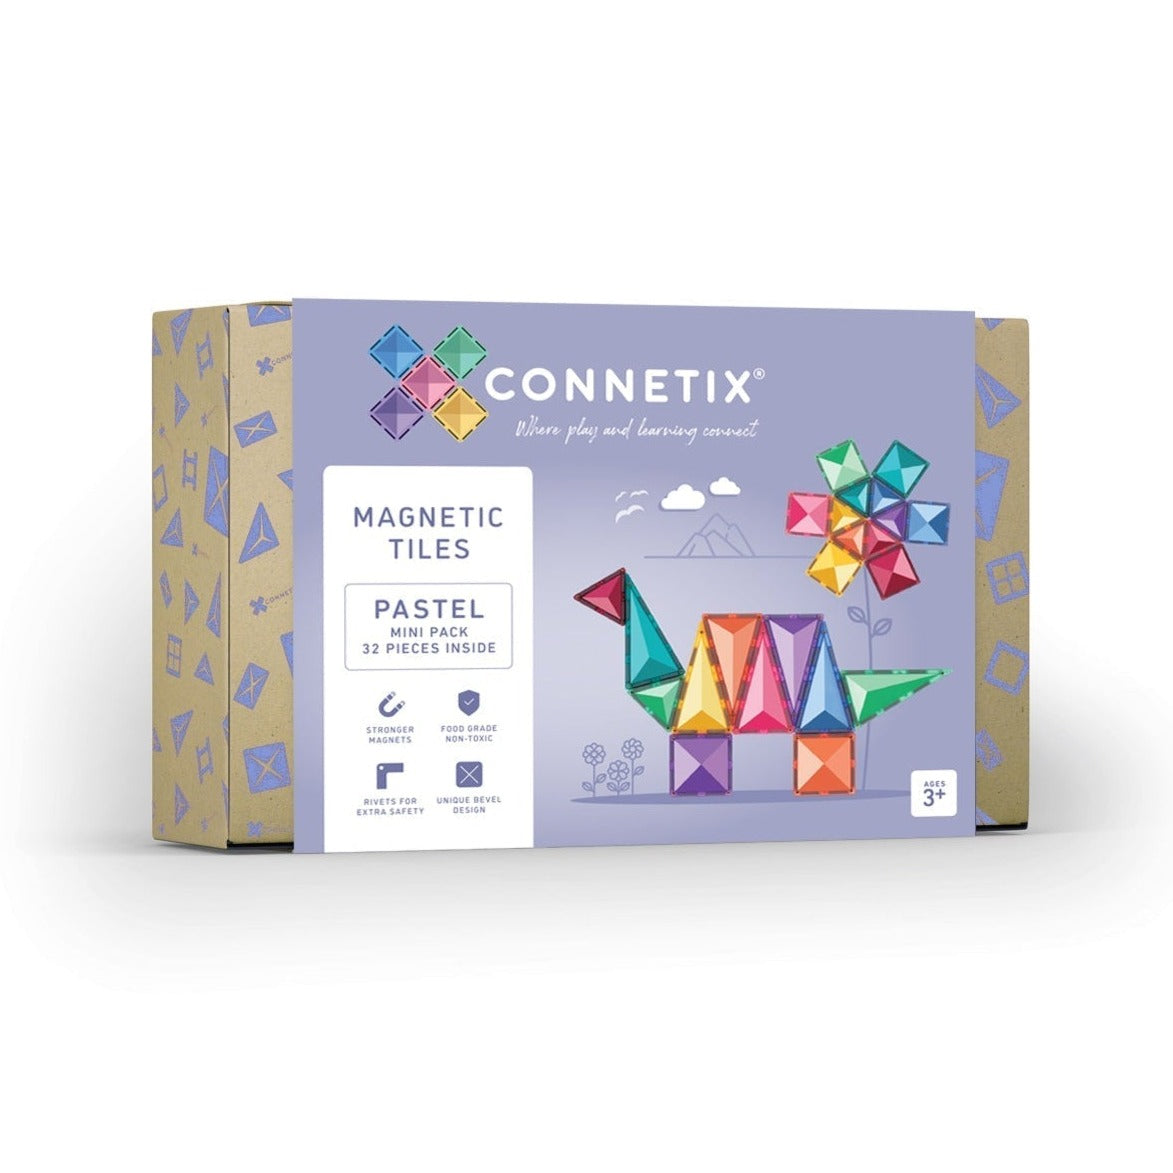 Connetix Pastel Mini Pack 32 pieces